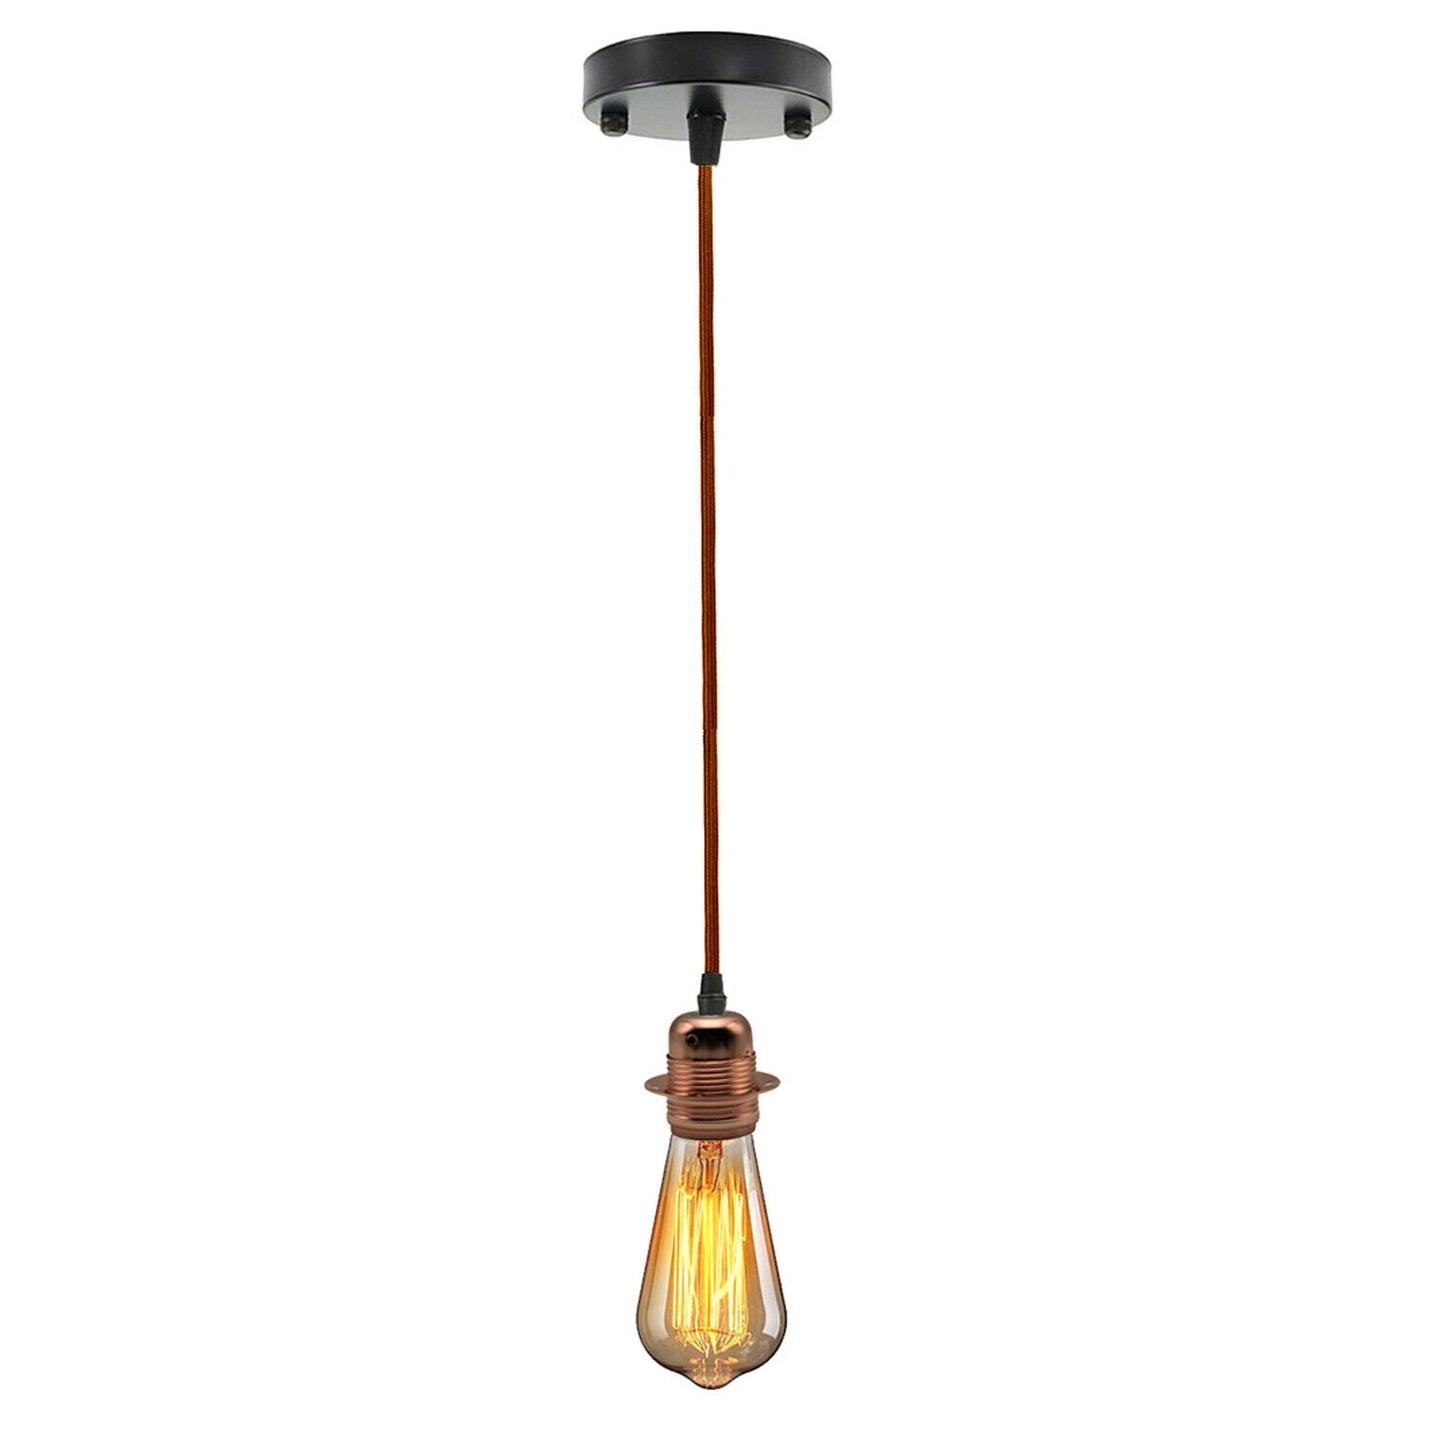 Brown Ceiling Rose Fabric Flex Hanging Pendant Light Lamp Holder Fitting Lighting Kit - Vintagelite